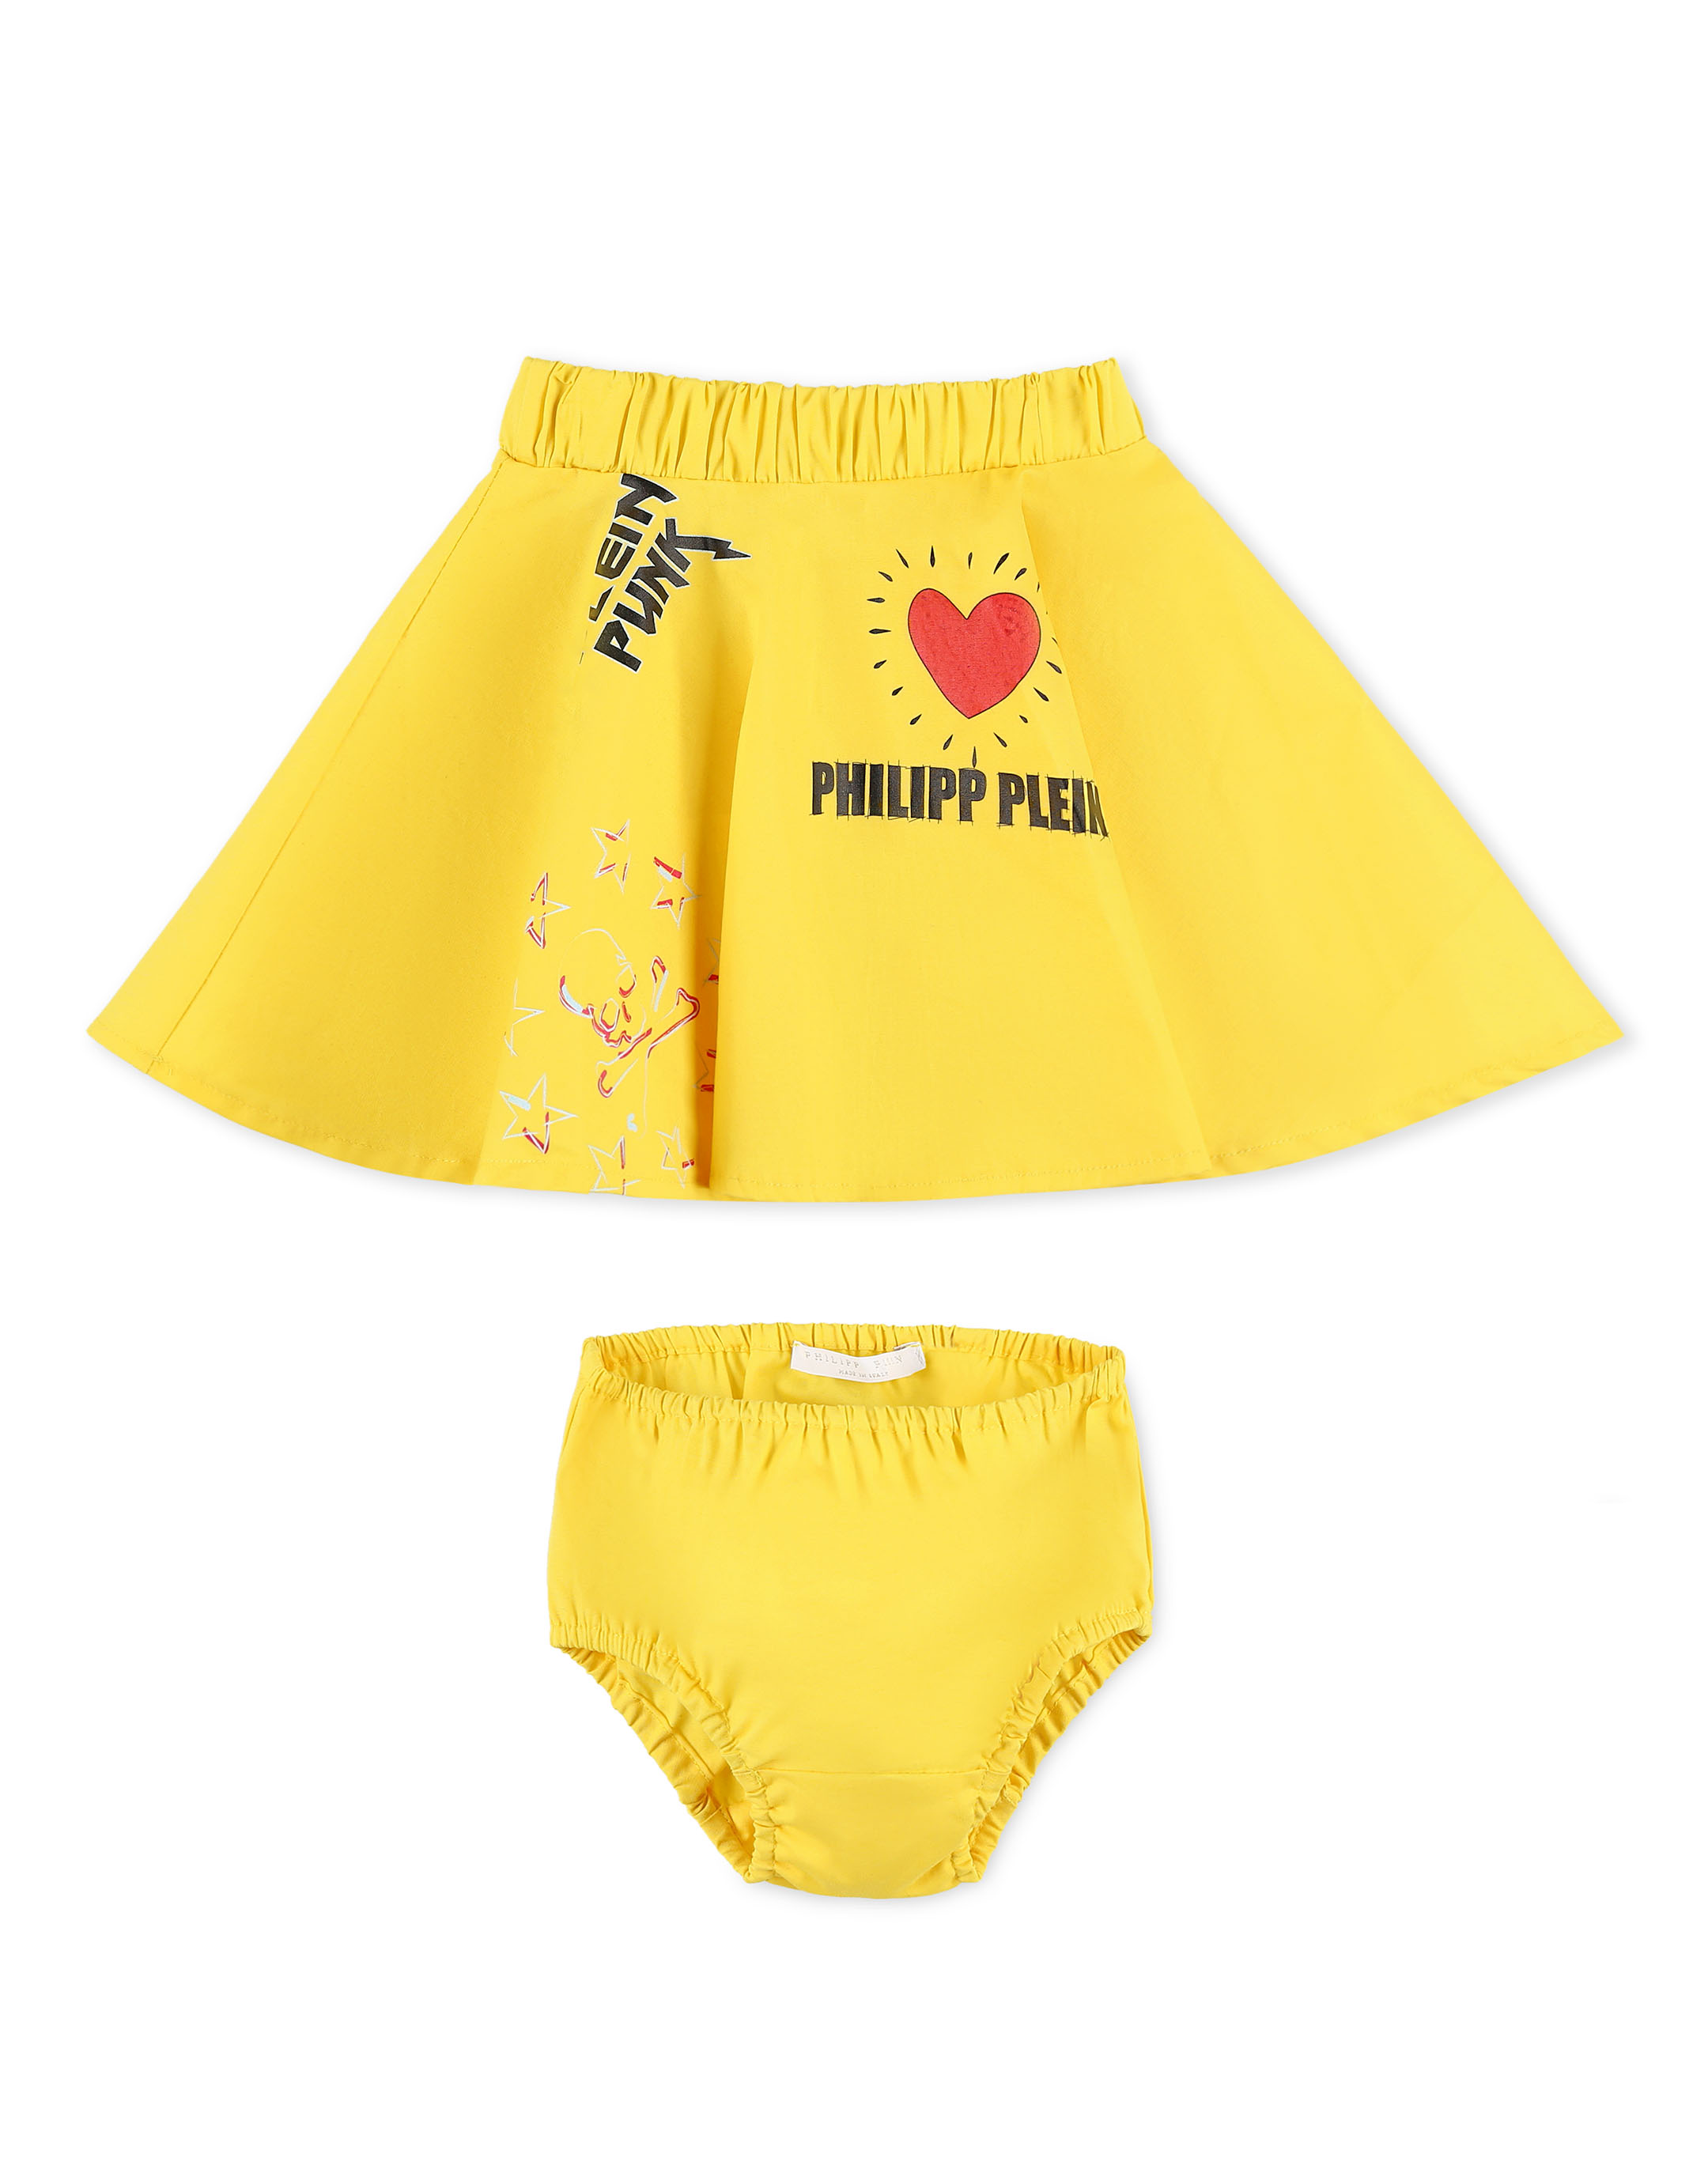 Ropa para niños - camiseta amarilla niña Philipp Plein